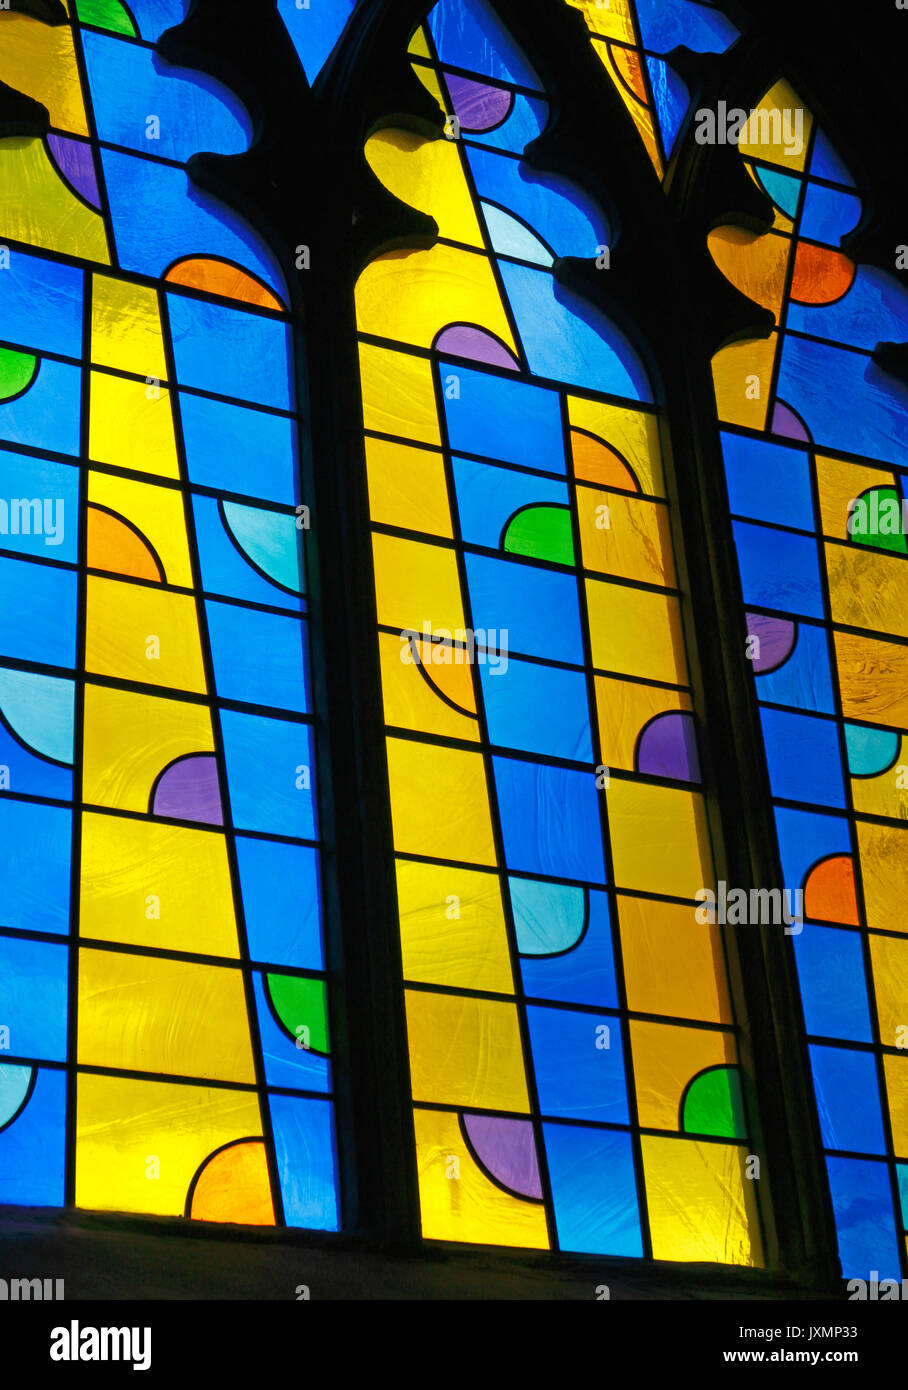 Ein Blick auf ein Fenster eines Triptychons der modernen Kirchenfenster von John mclean im nördlichen Seitenschiff der Kathedrale von Norwich, Norfolk, England, Vereinigtes Königreich. Stockfoto